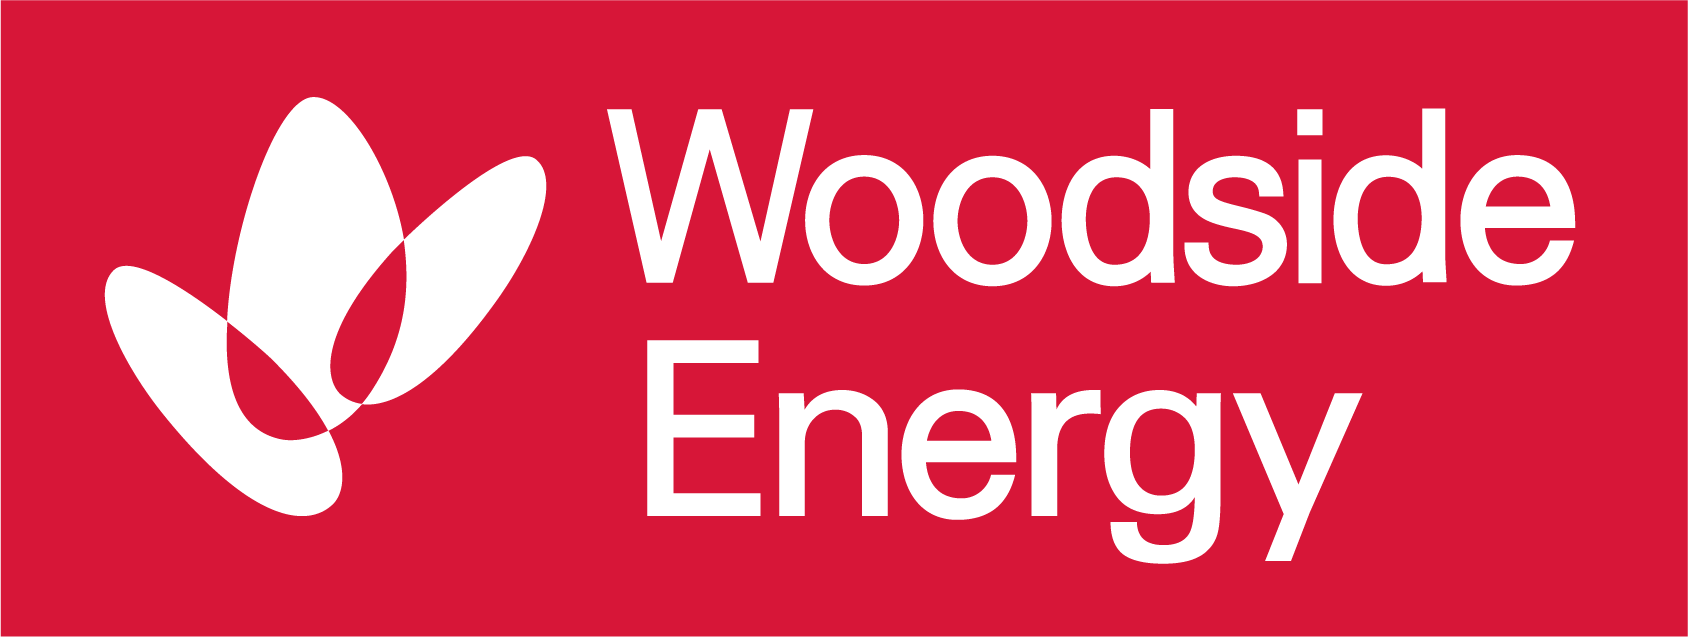 Woodside Energy Logo - Skin Patrol